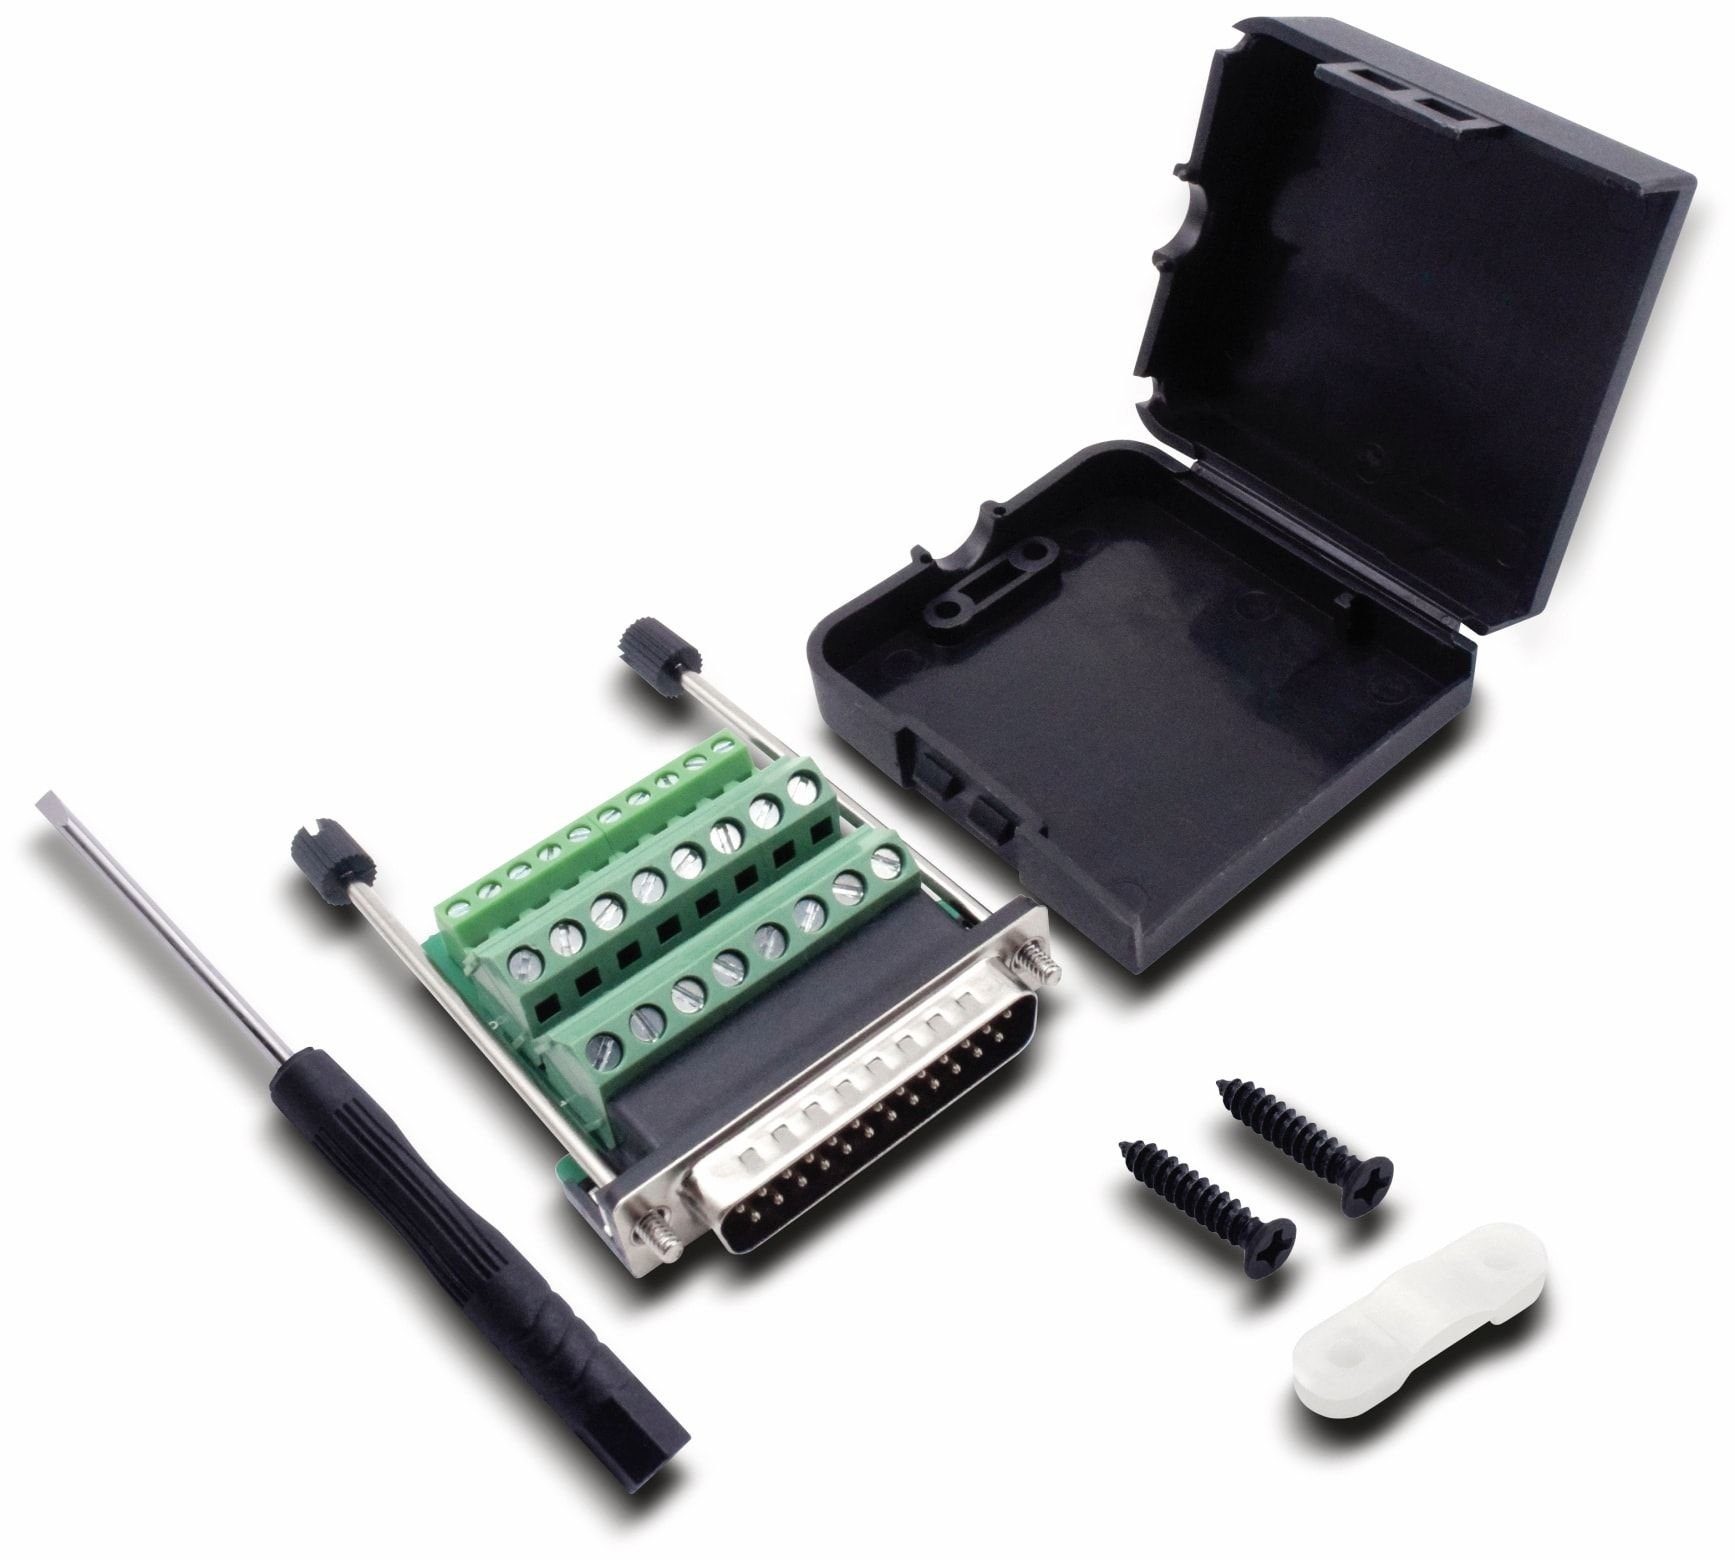 Quadrios Klemmen QUADRIOS, 2010C260, USB-Modular-Set, D-Sub